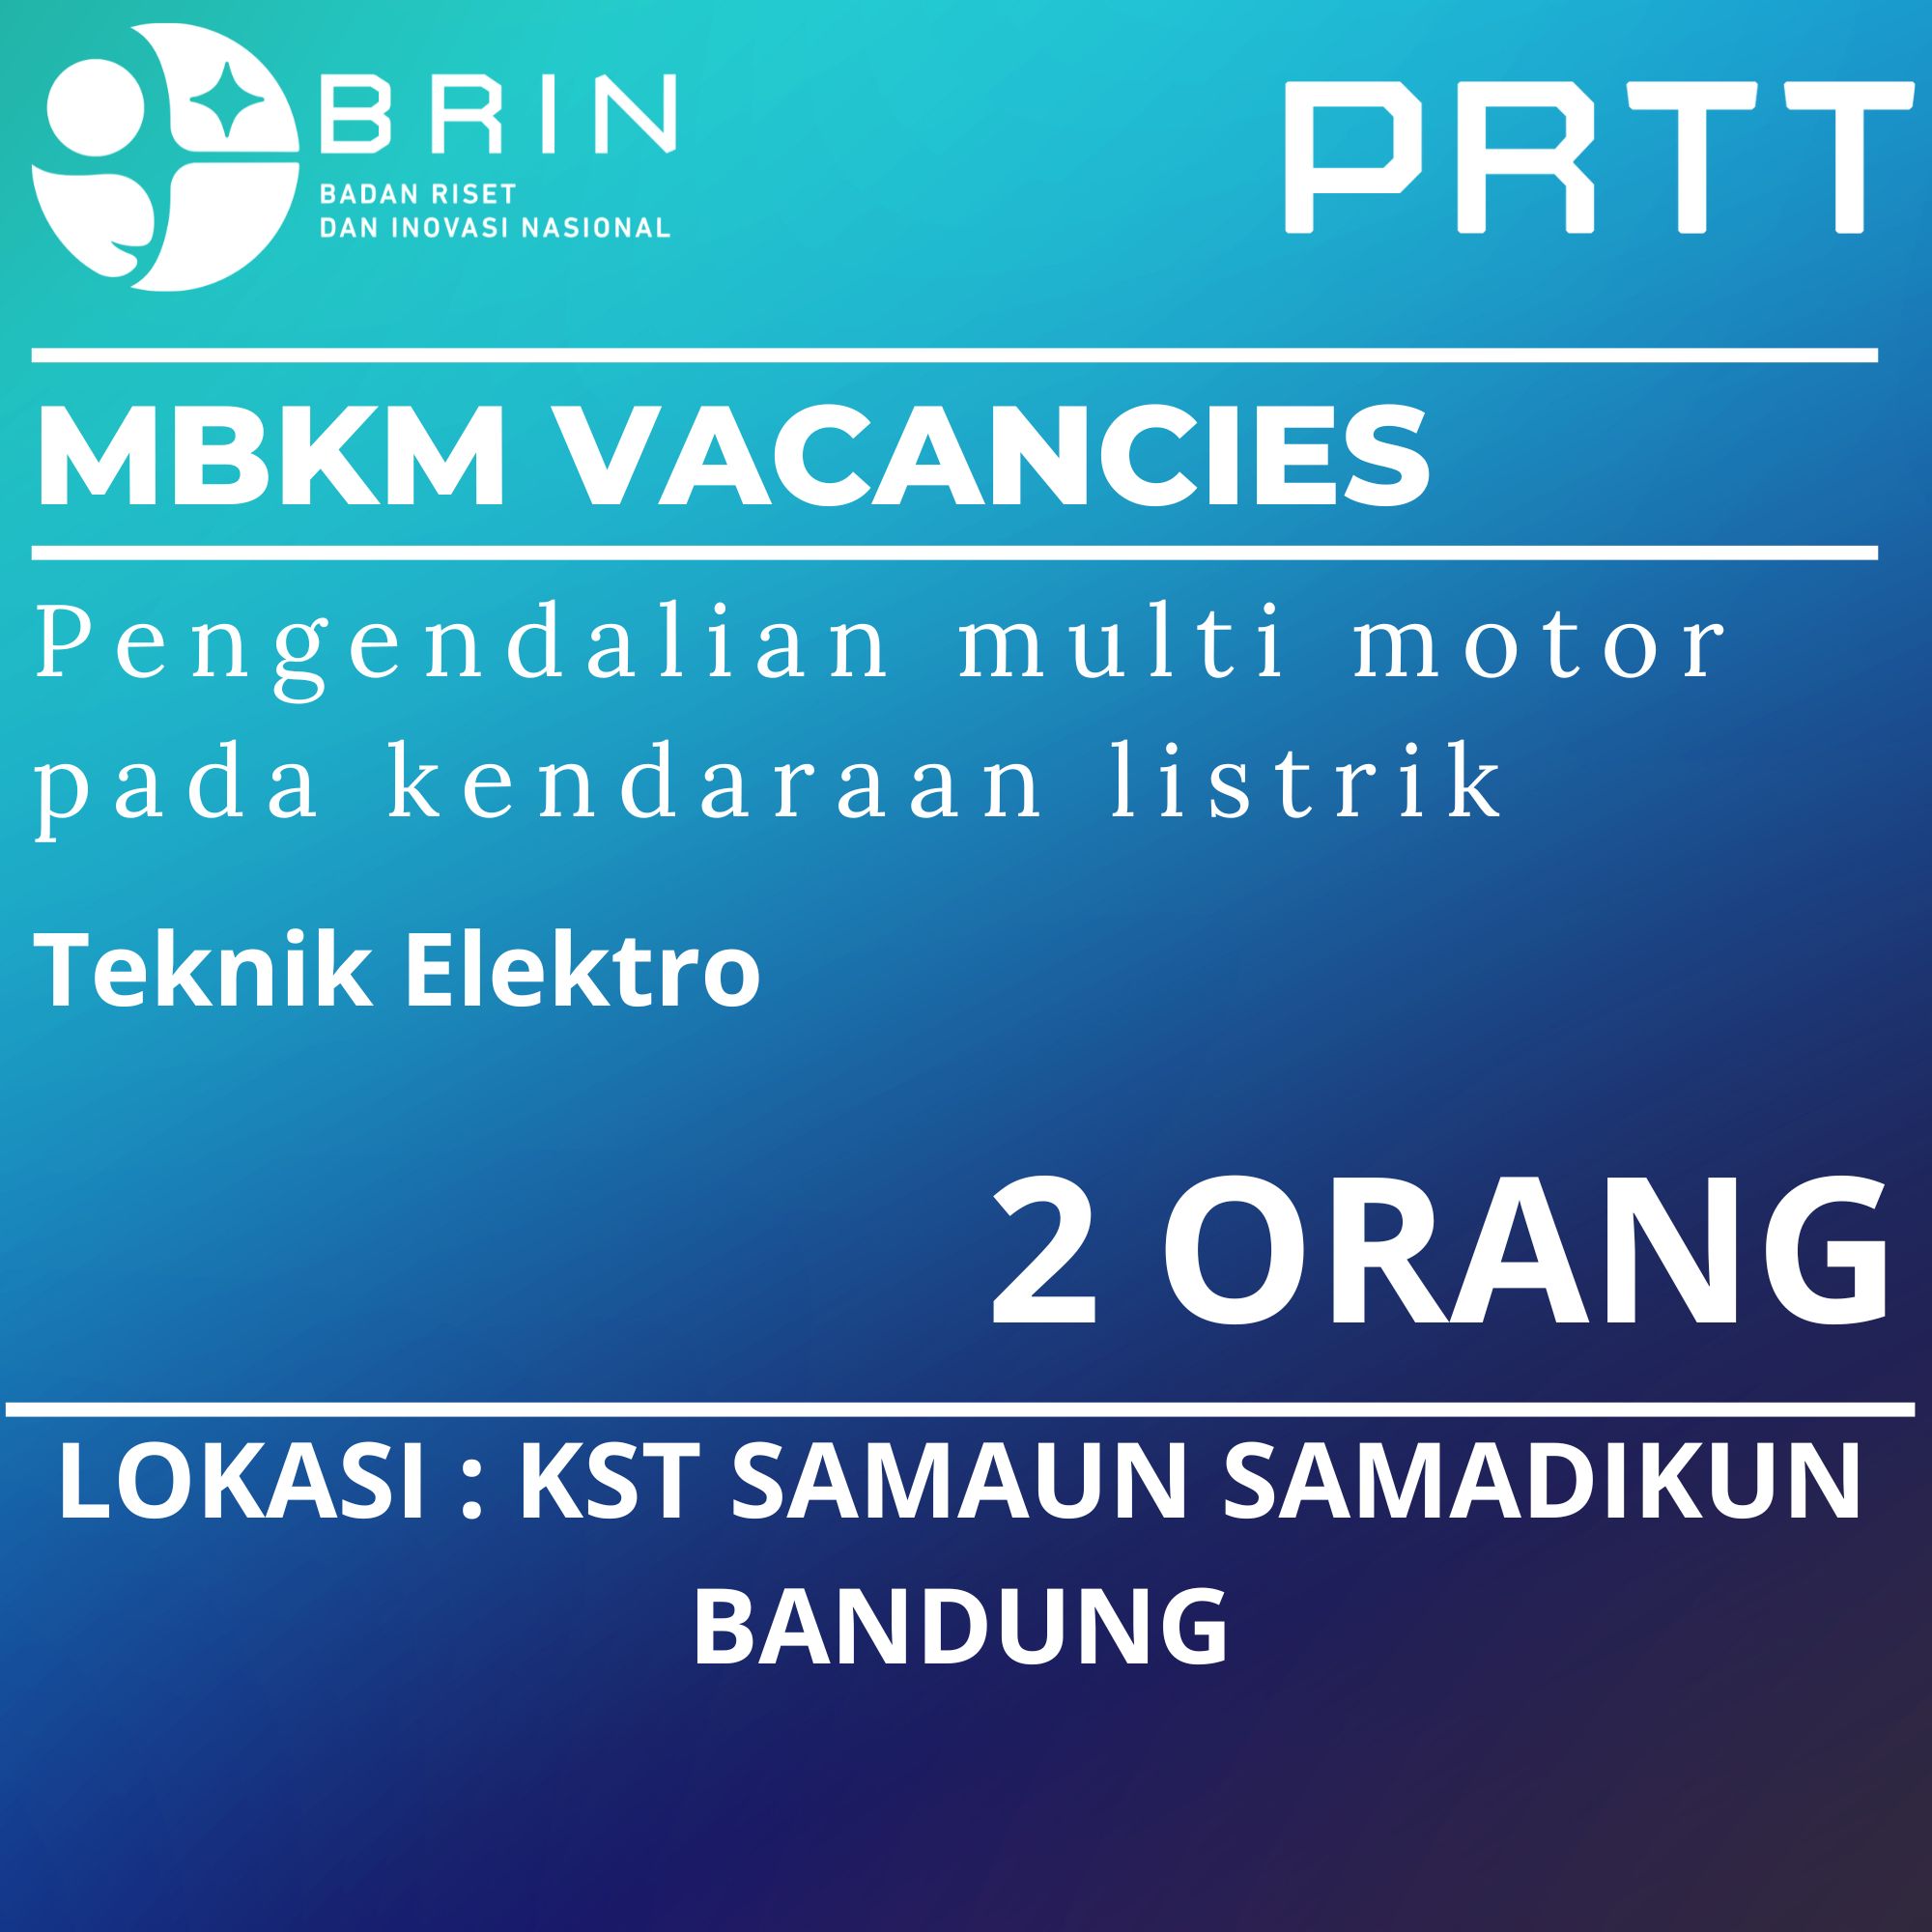 Research - Electric Vehicle Technology - KST Samaun Samadikun Bandung